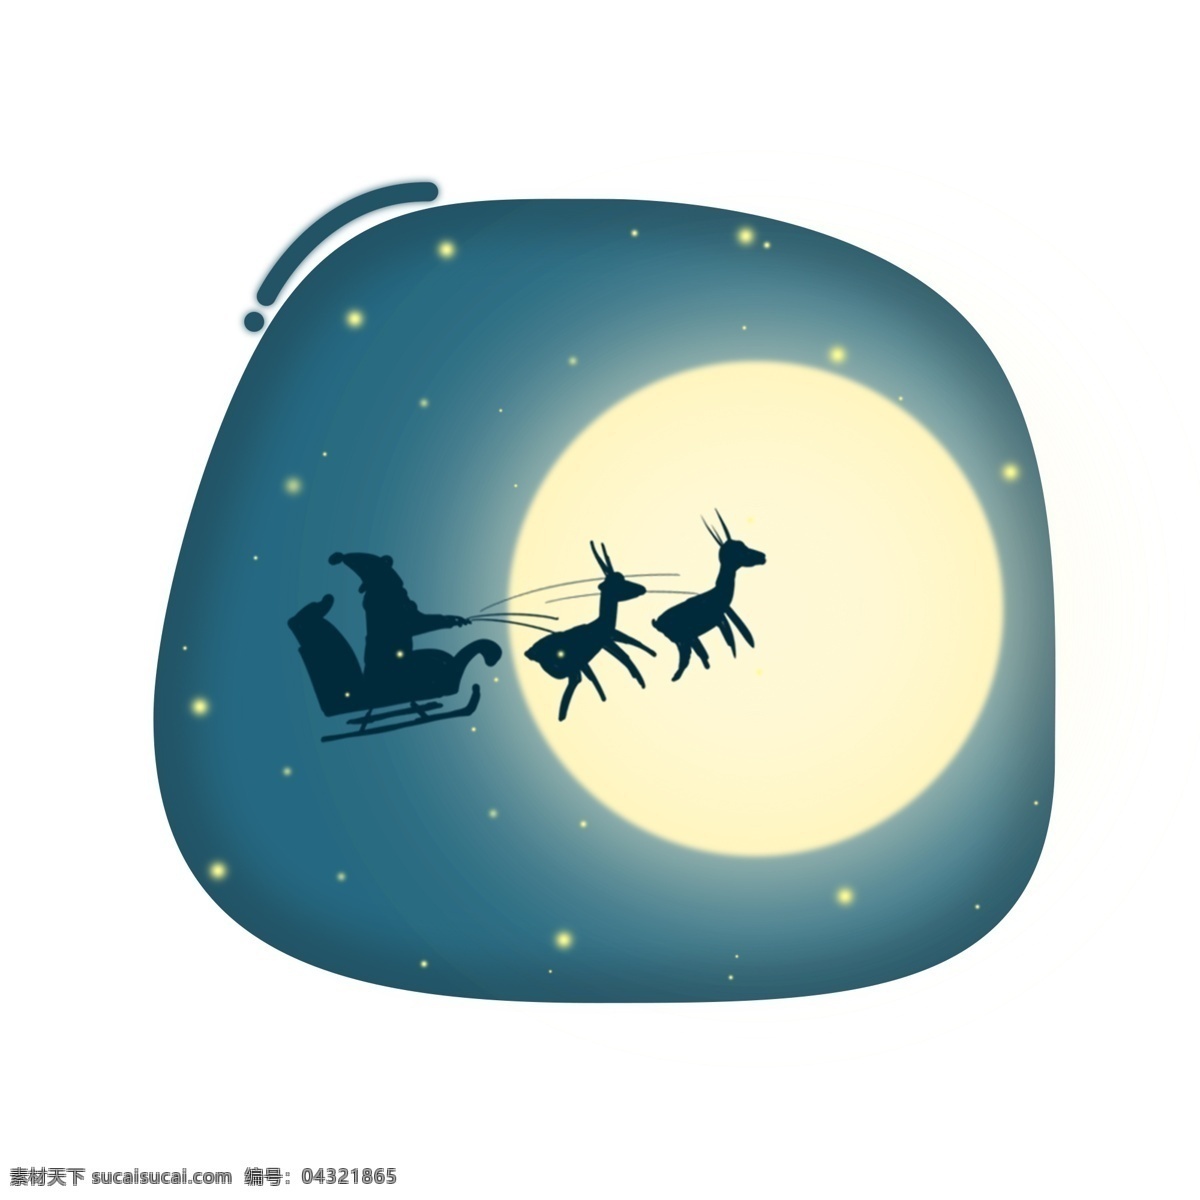 原创 手绘 圣诞 场景 夜空 中 圣诞老人 元素 装饰 圣诞节 星空 设计元素 可商用